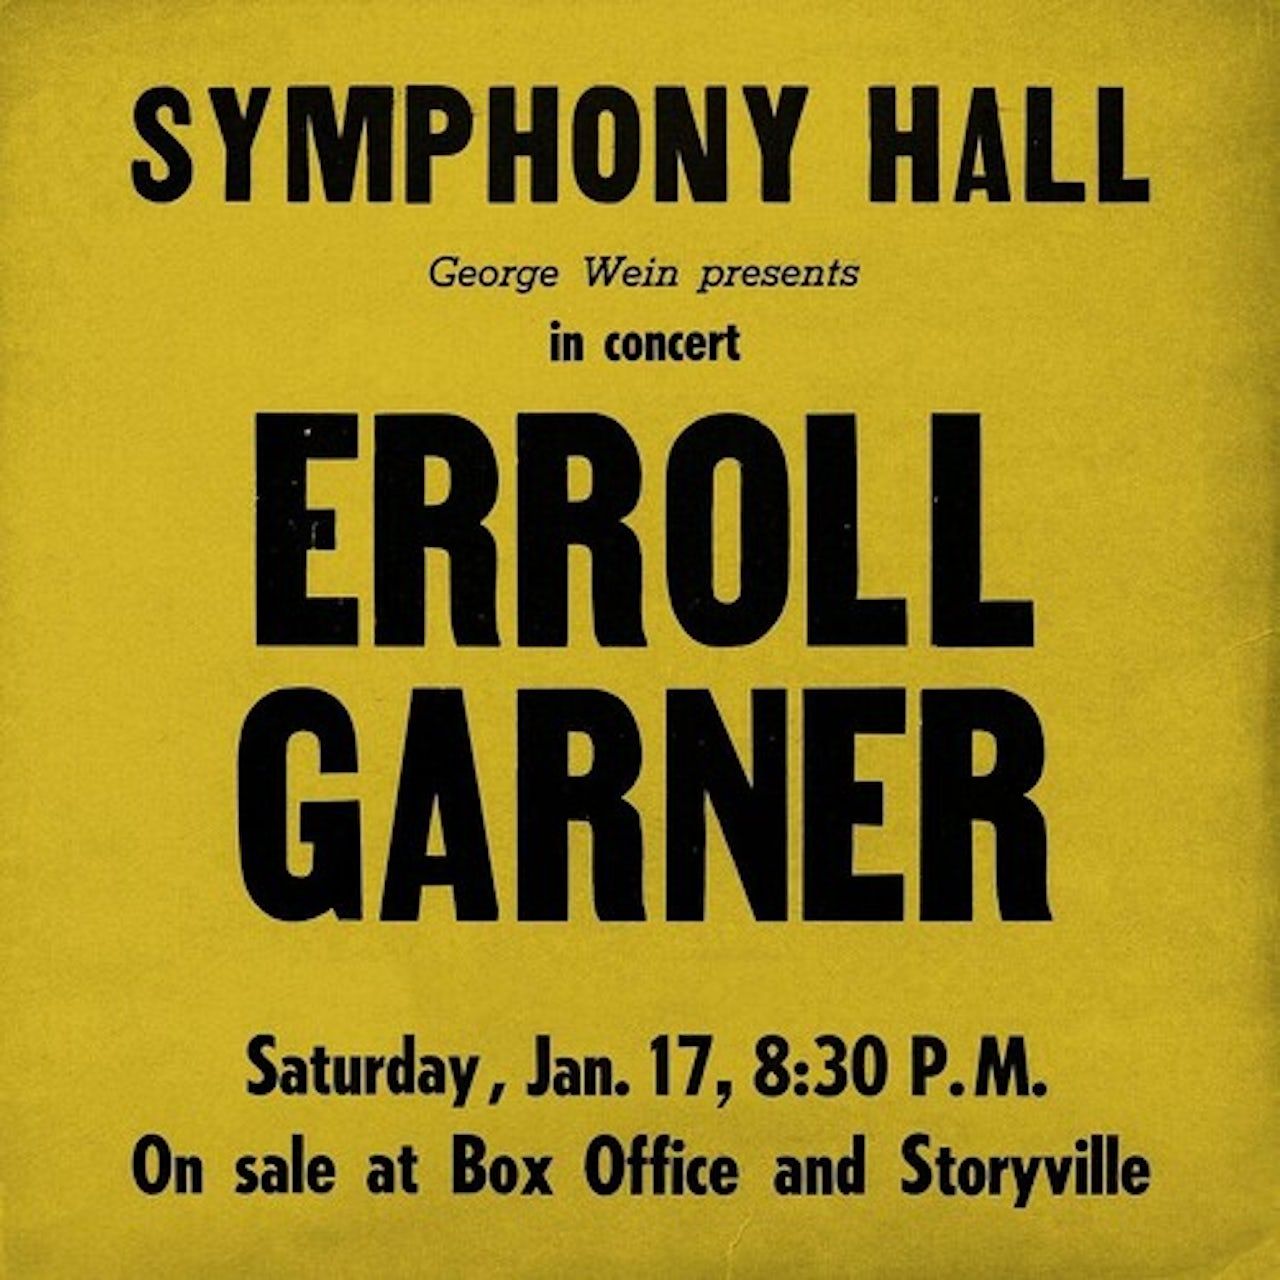 Виниловая пластинка Garner, Erroll, Symphony Hall Concert (0673203118911) виниловая пластинка garner erroll erroll garner trio vol 1 0889854482619